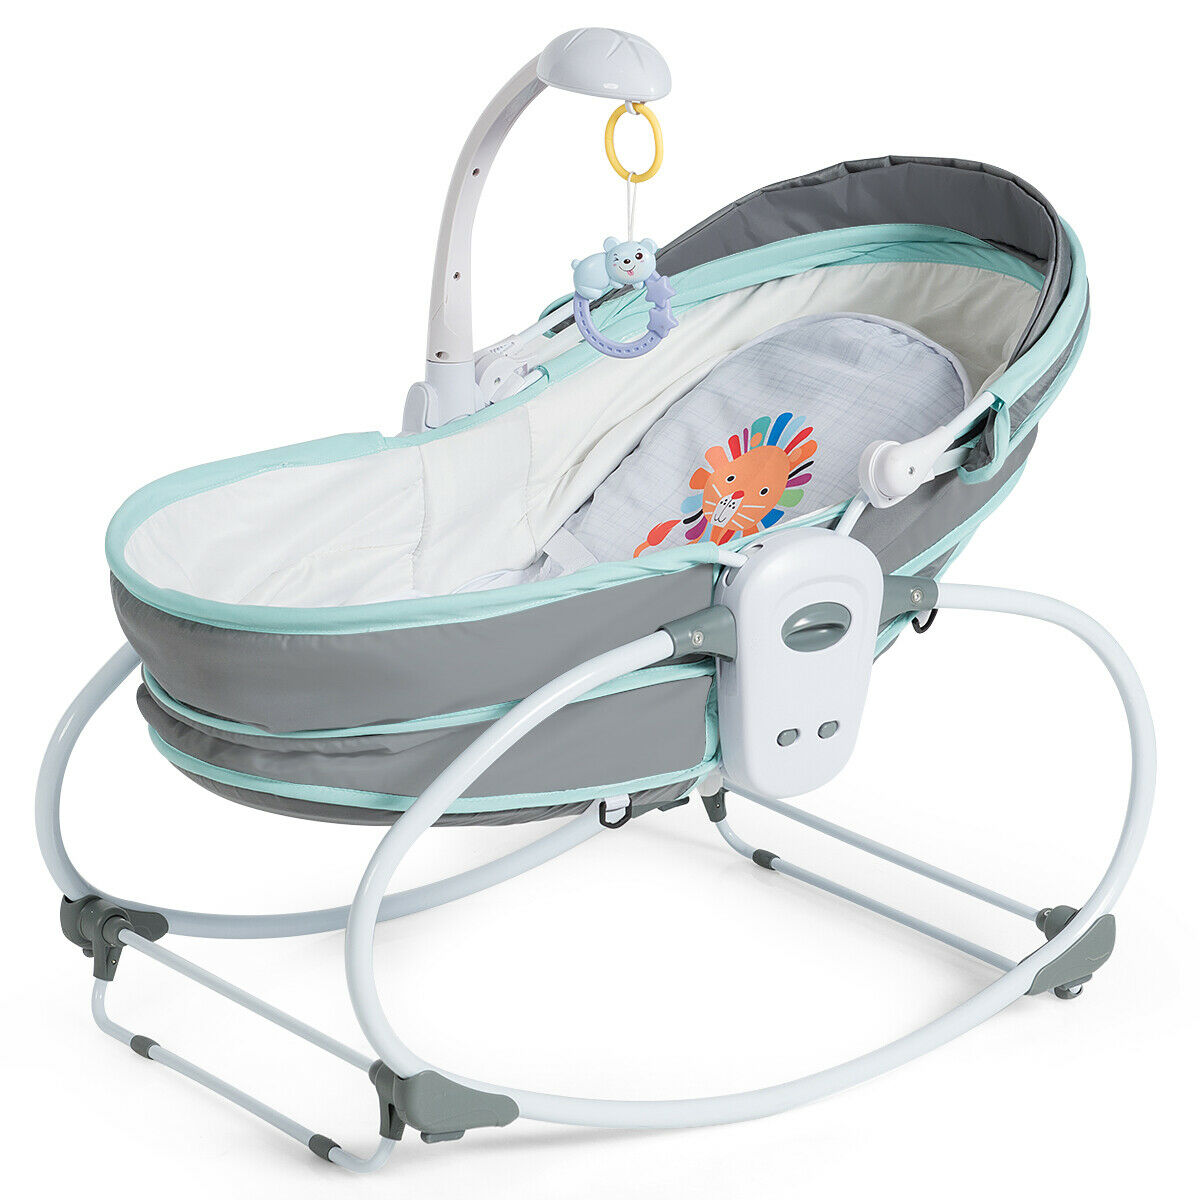 infant rocking bassinet cot bed